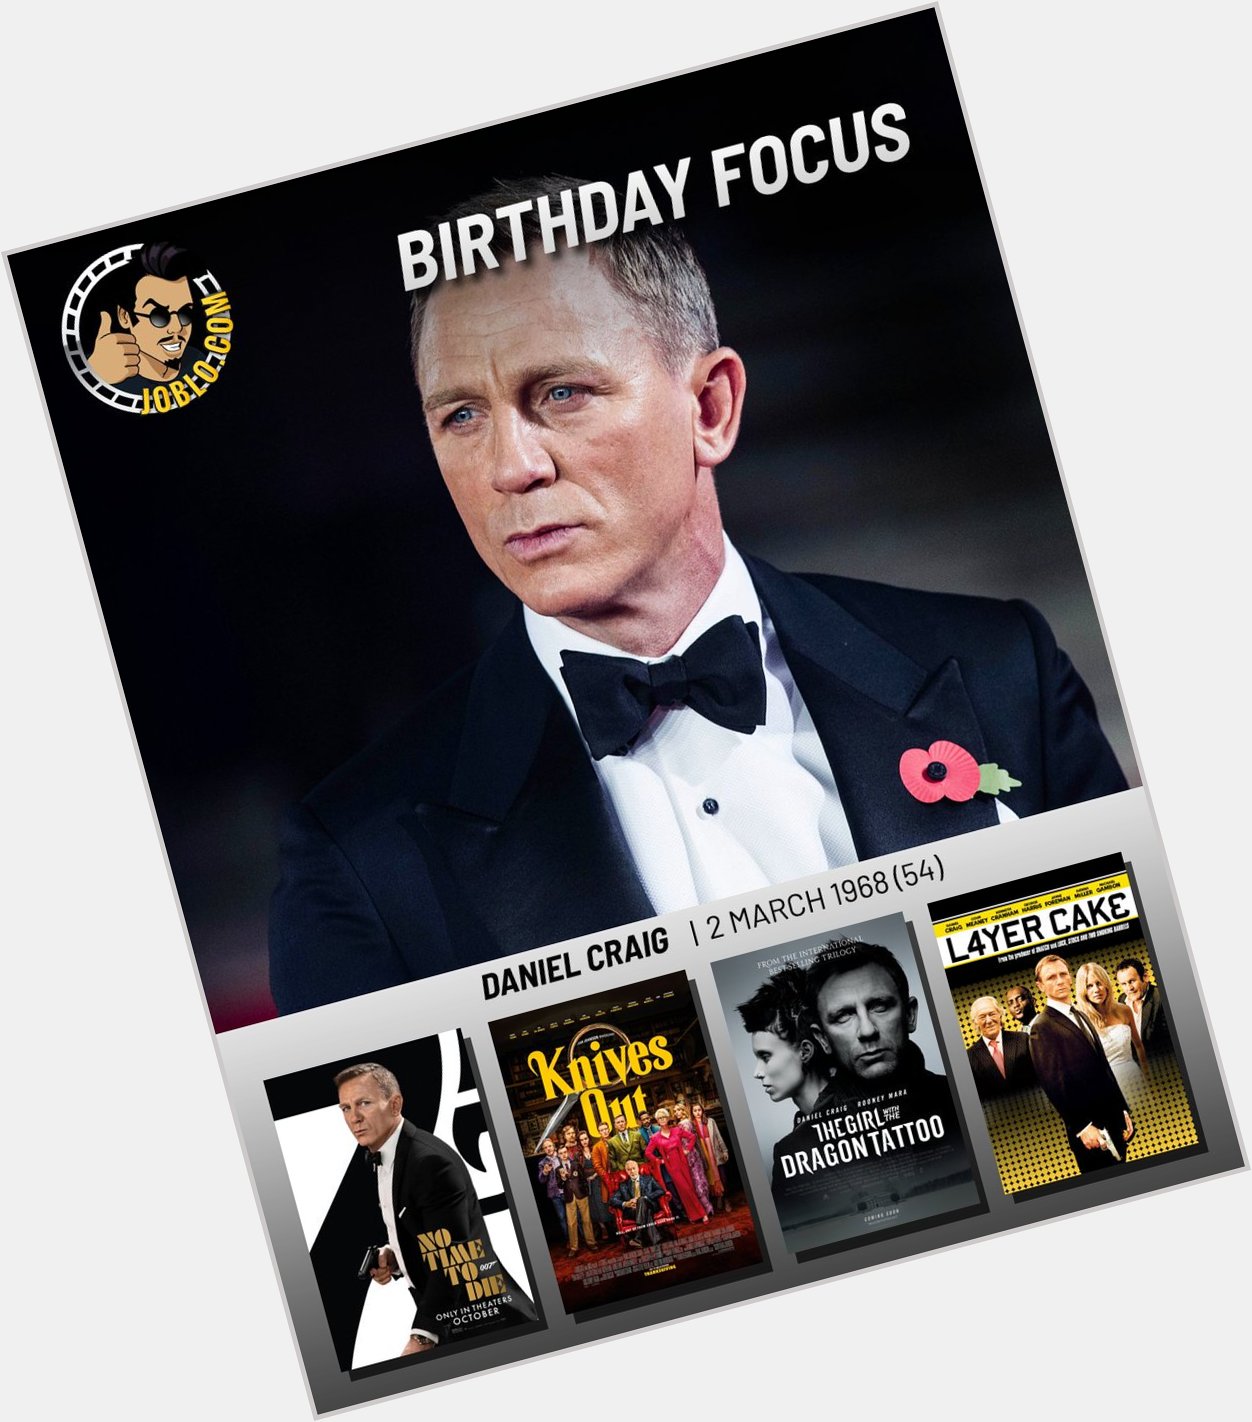 Wishing Daniel Craig a very happy 54th birthday! 